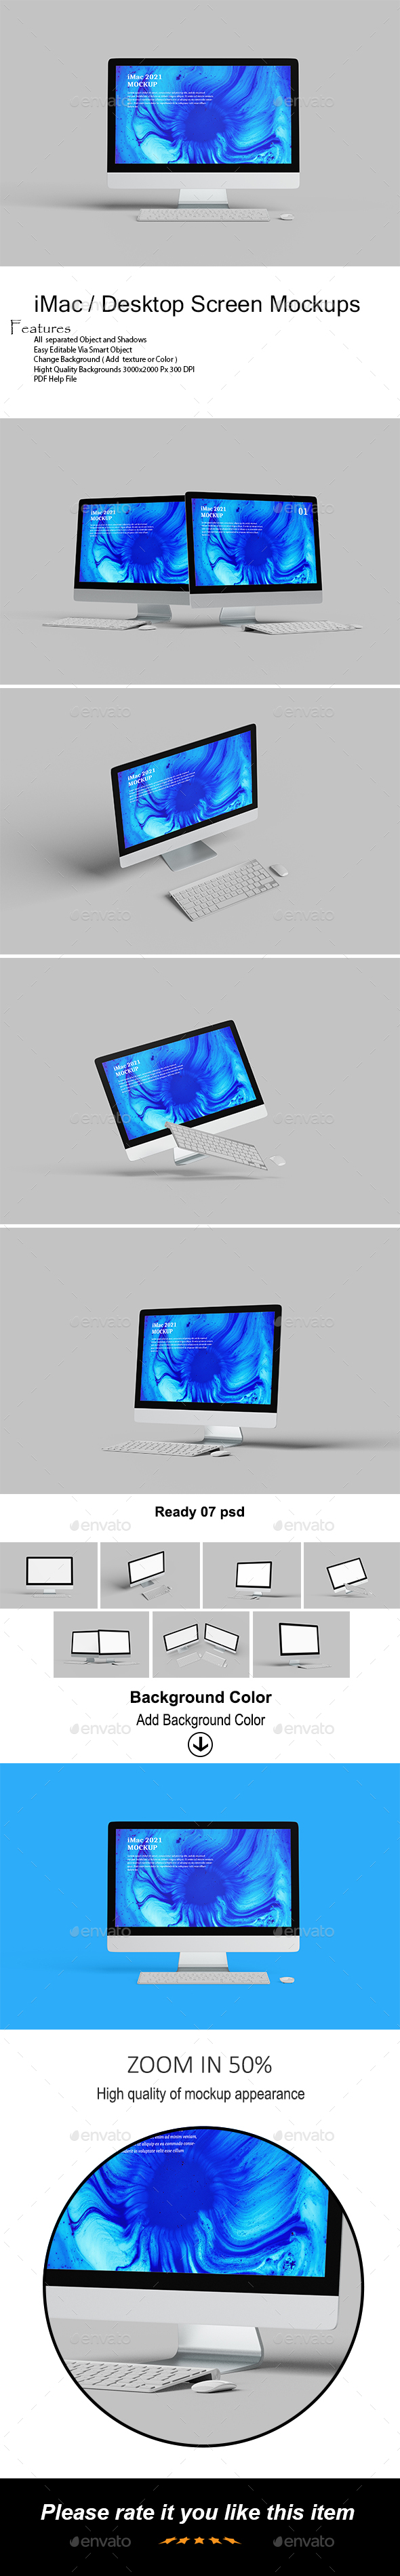 iMac / Desktop Screen Mockups